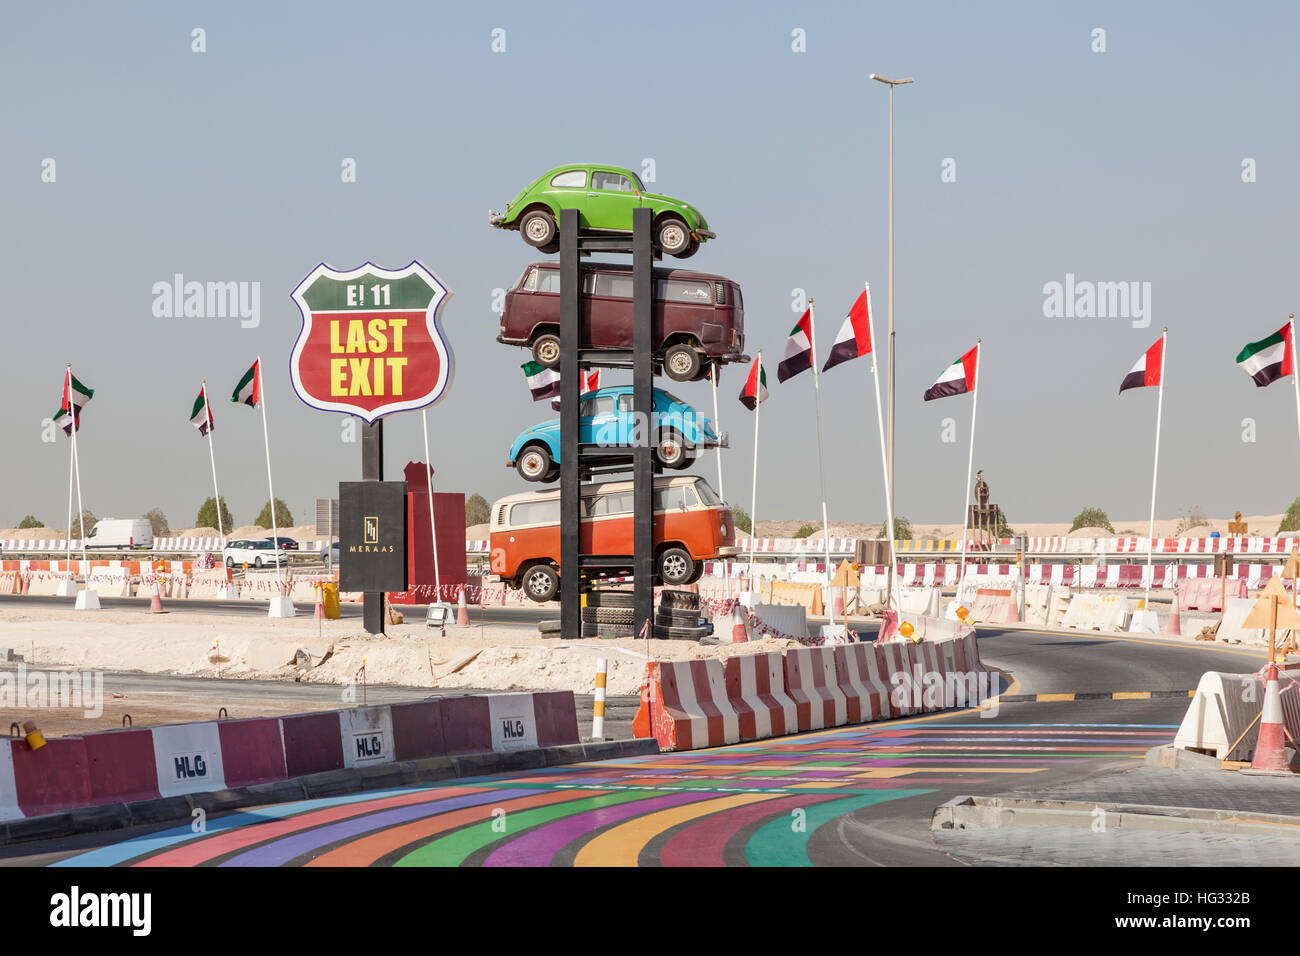 Last Exit food trucks in Dubai, United Arab Emirates Stock Photo